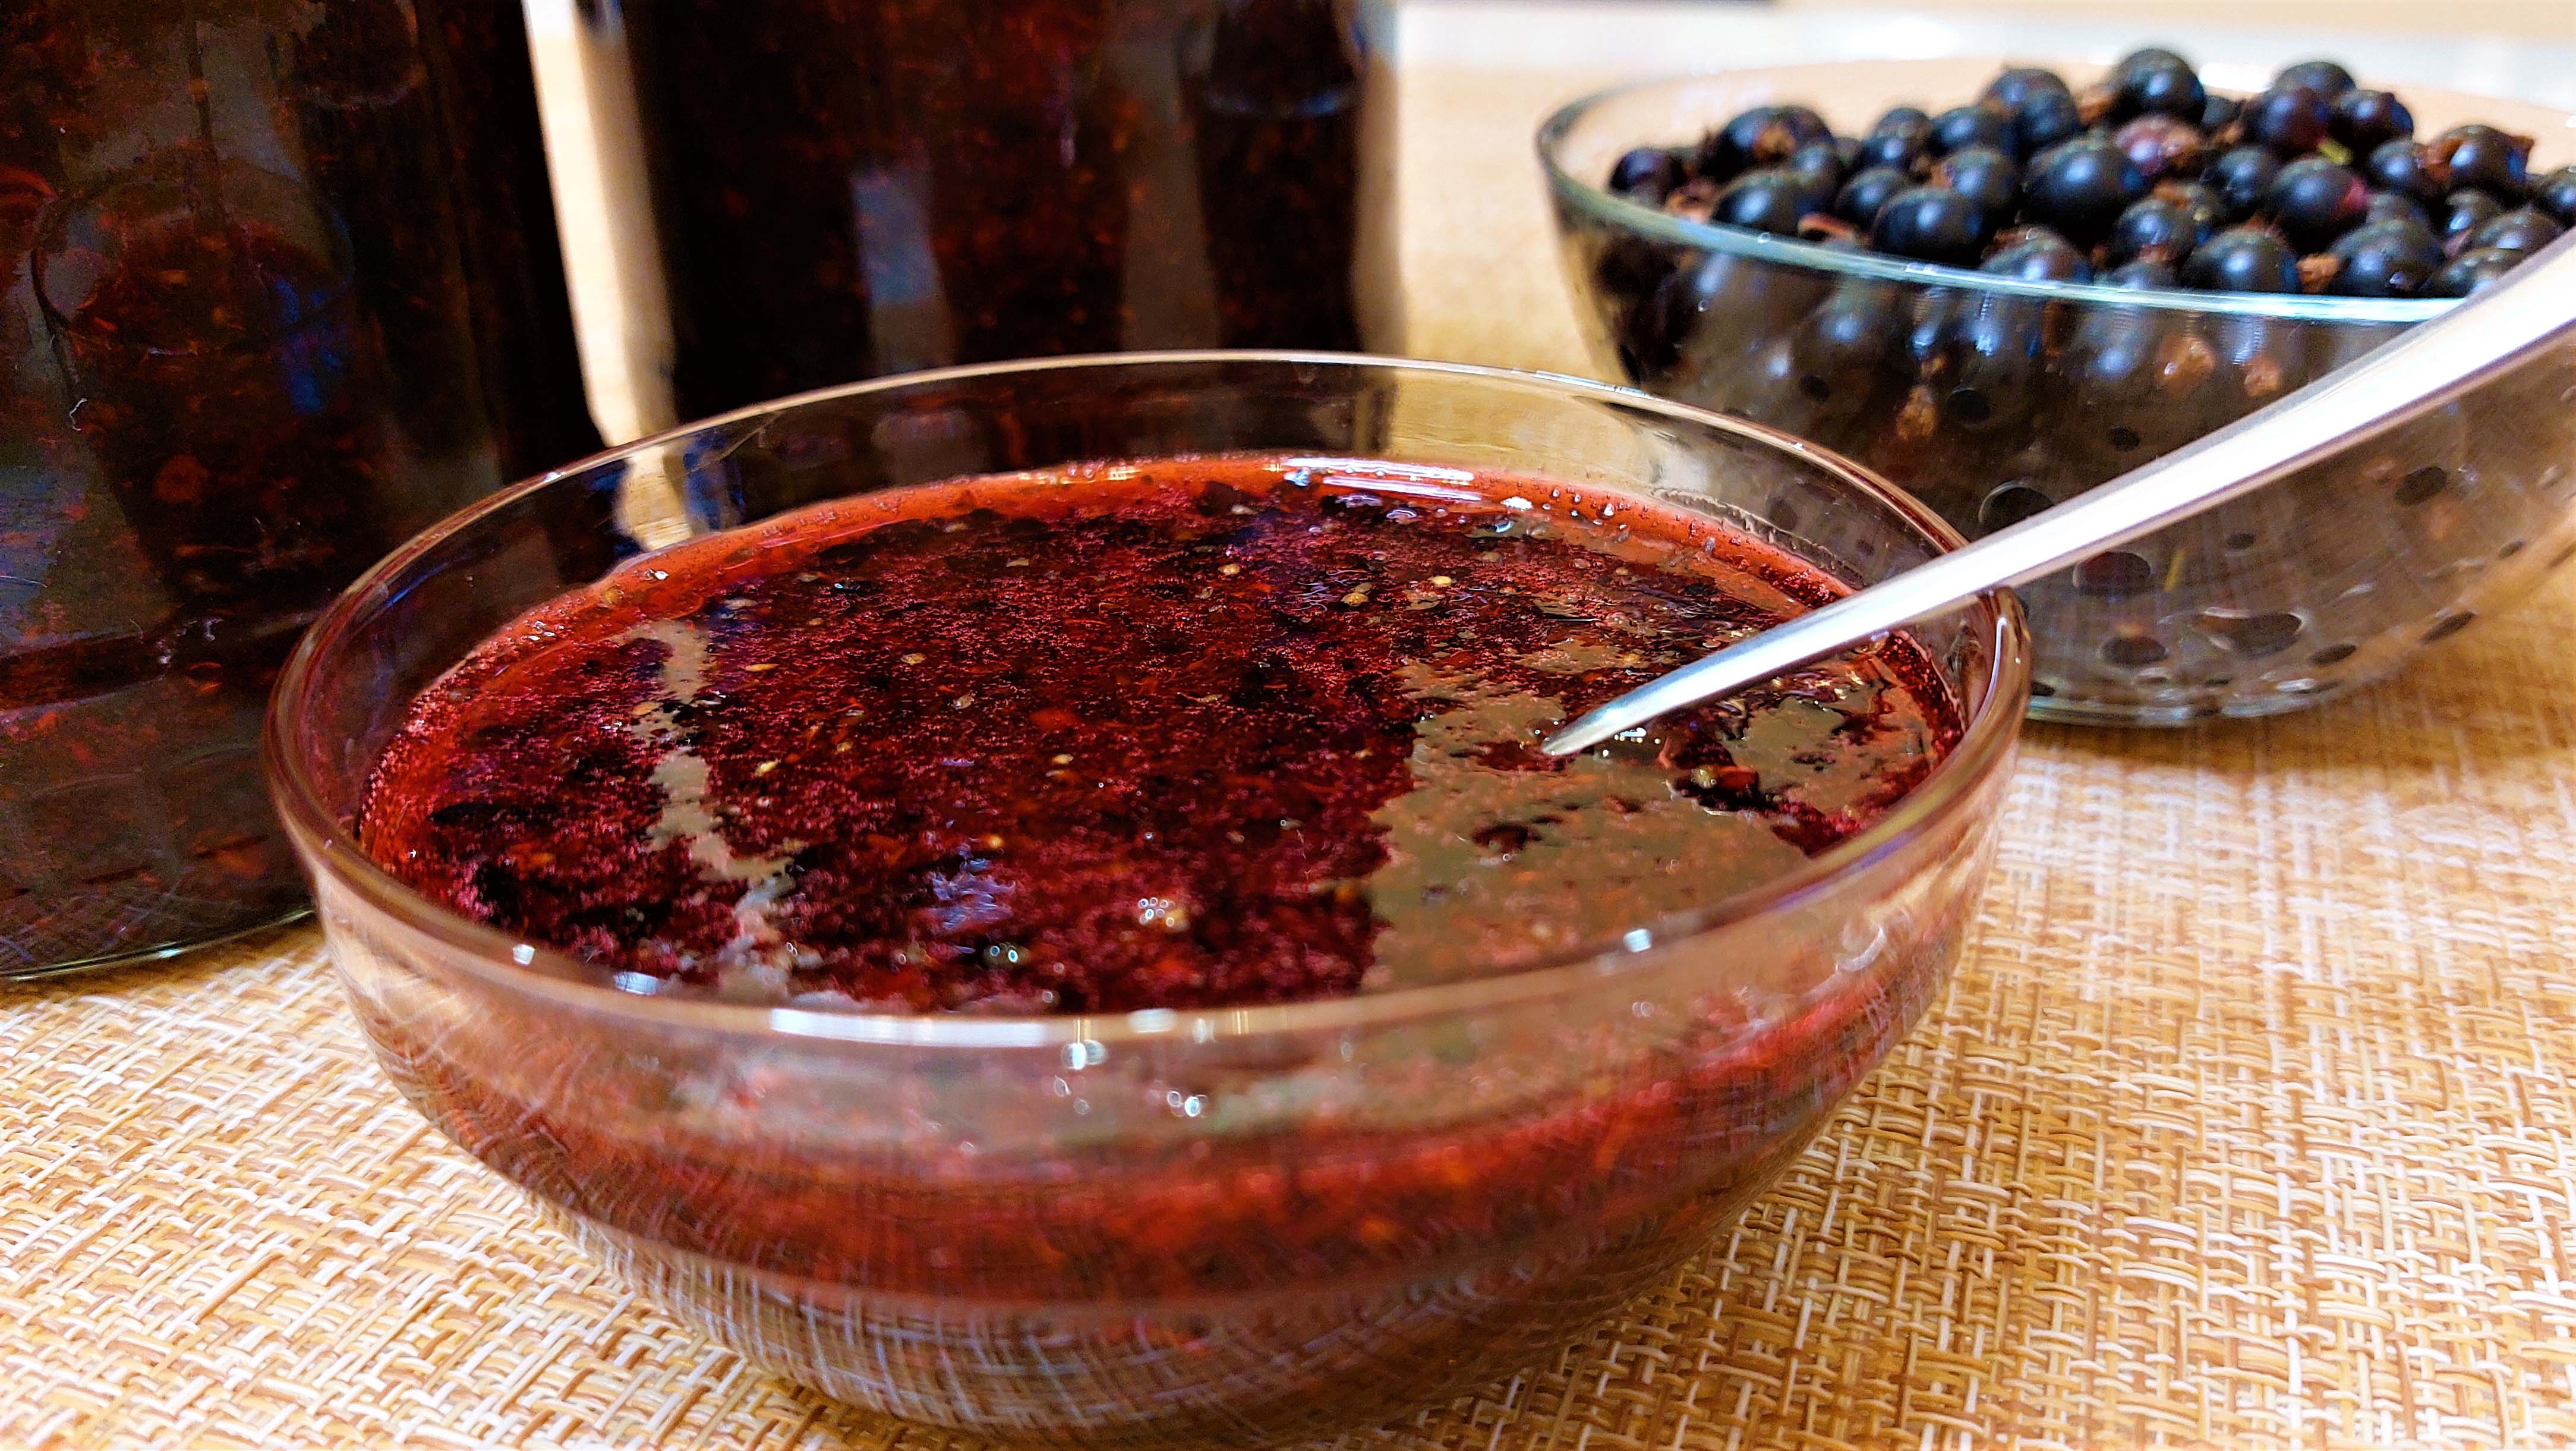 Варенье из смородины без варки - рецепты ягод протертых с сахаром на зиму